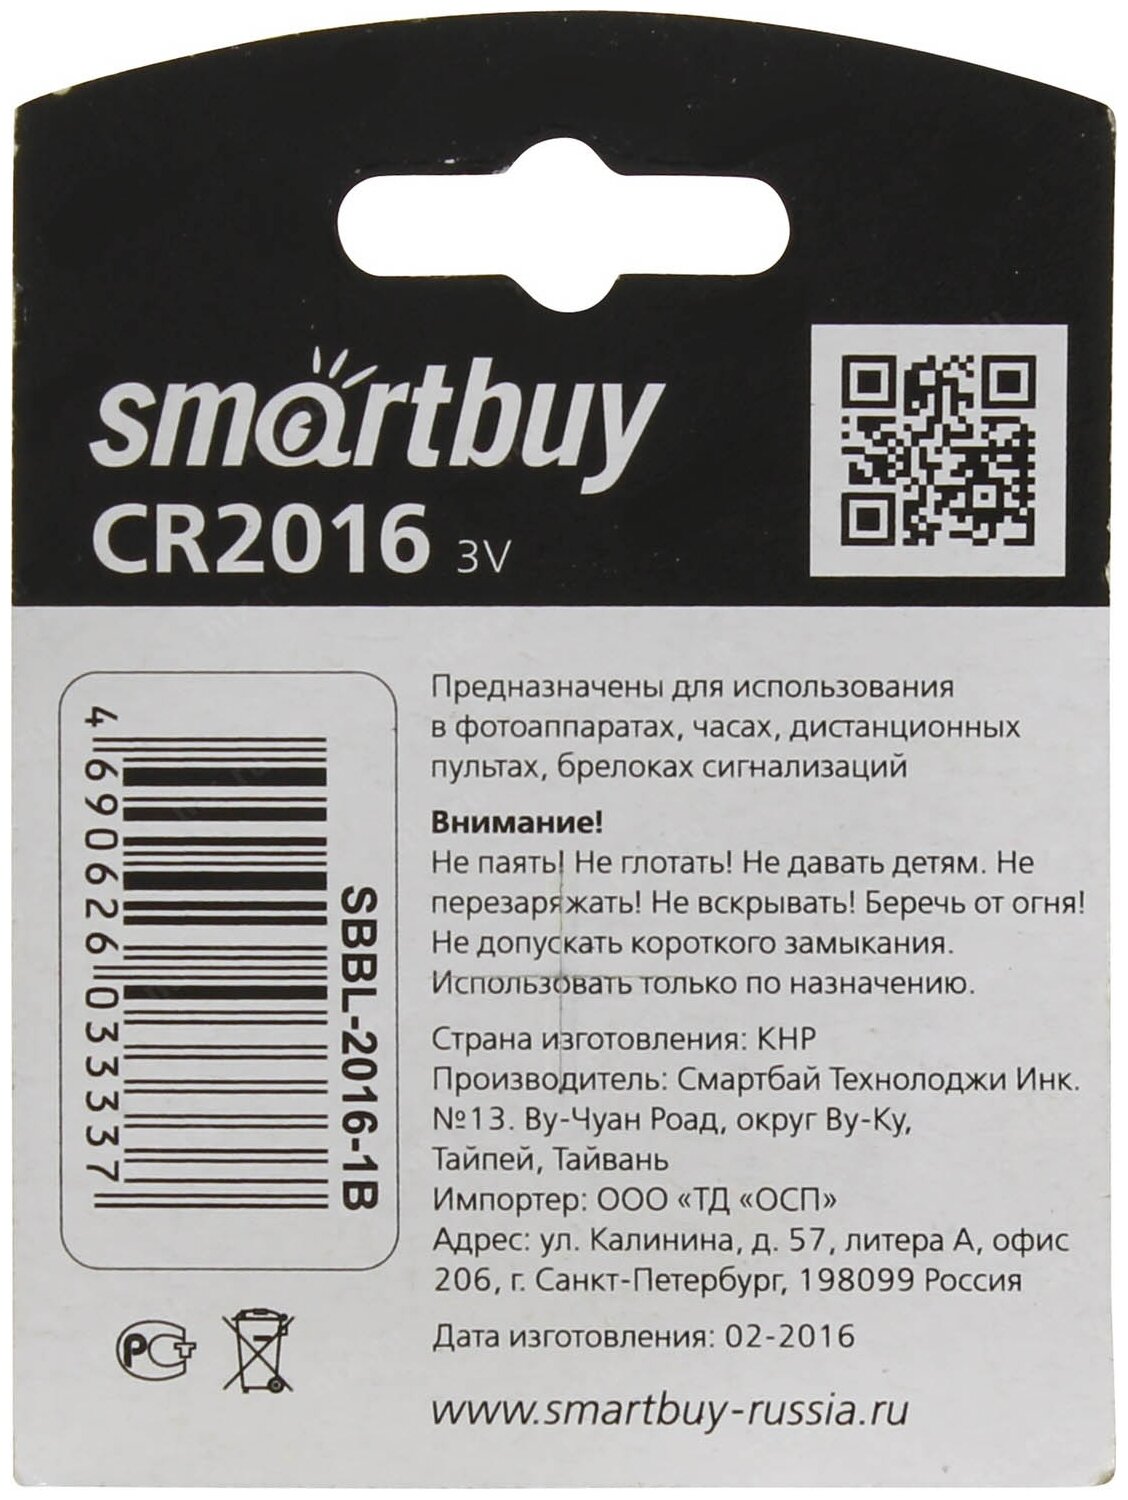 Литиевый элемент питания Smartbuy CR2016, 1 шт.